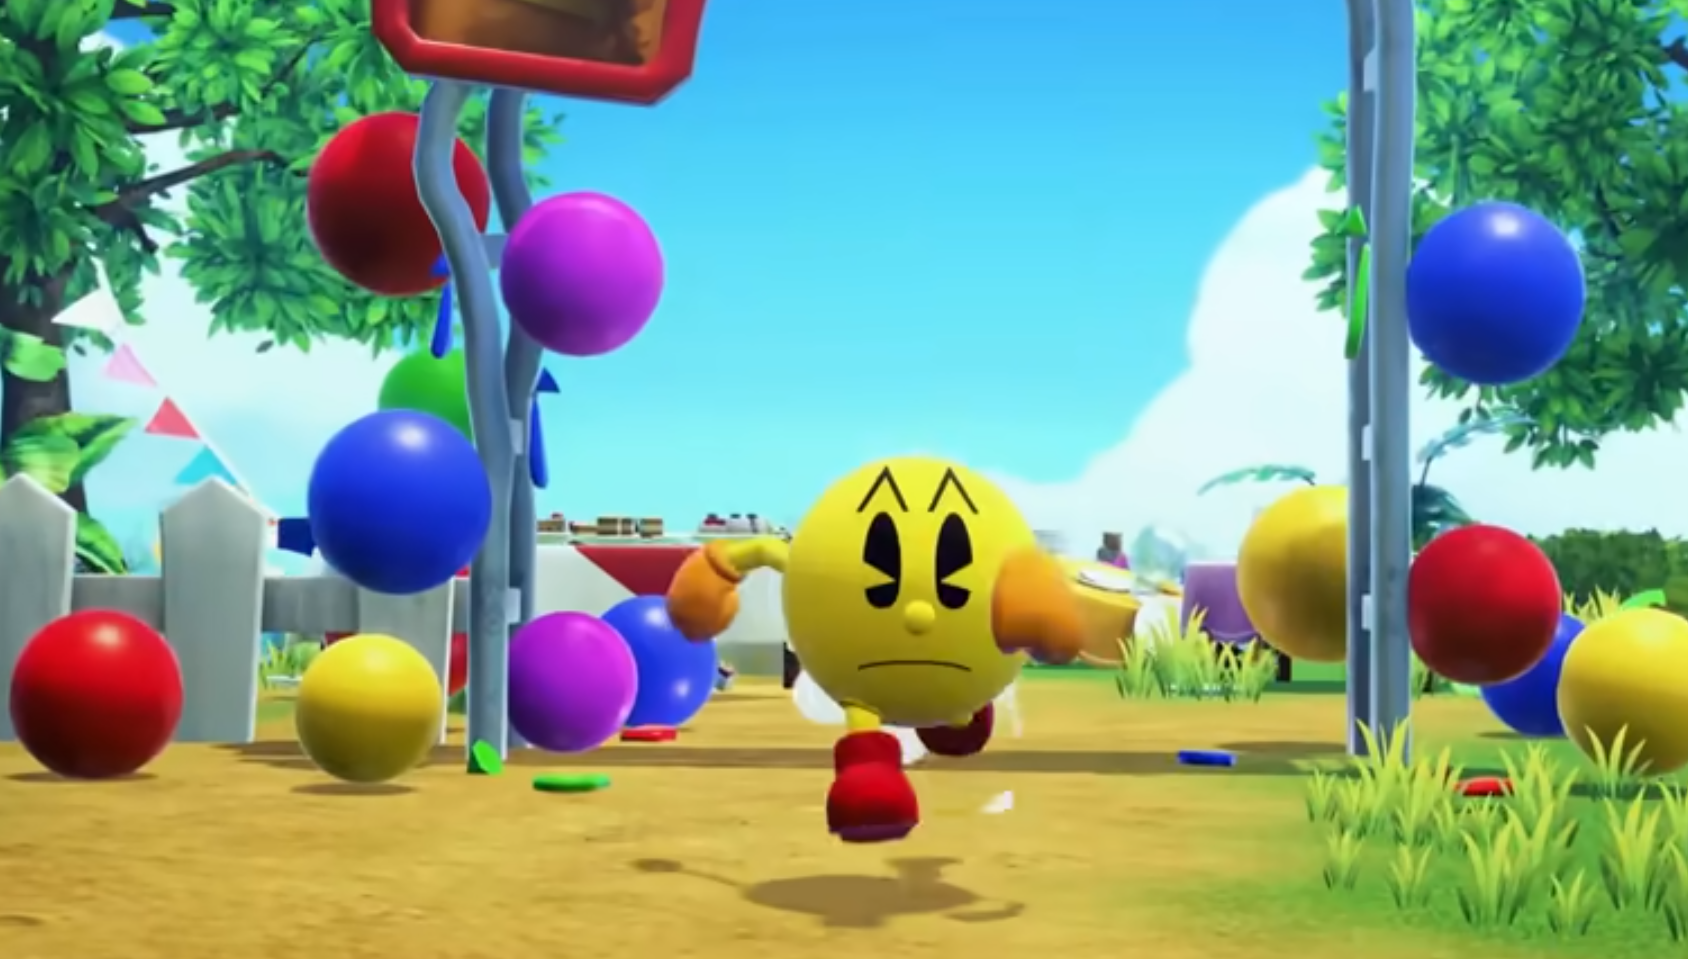 Huyền thoại tuổi thơ Pac-Man được làm mới sau gần 20 năm “ngủ đông” - ảnh 3